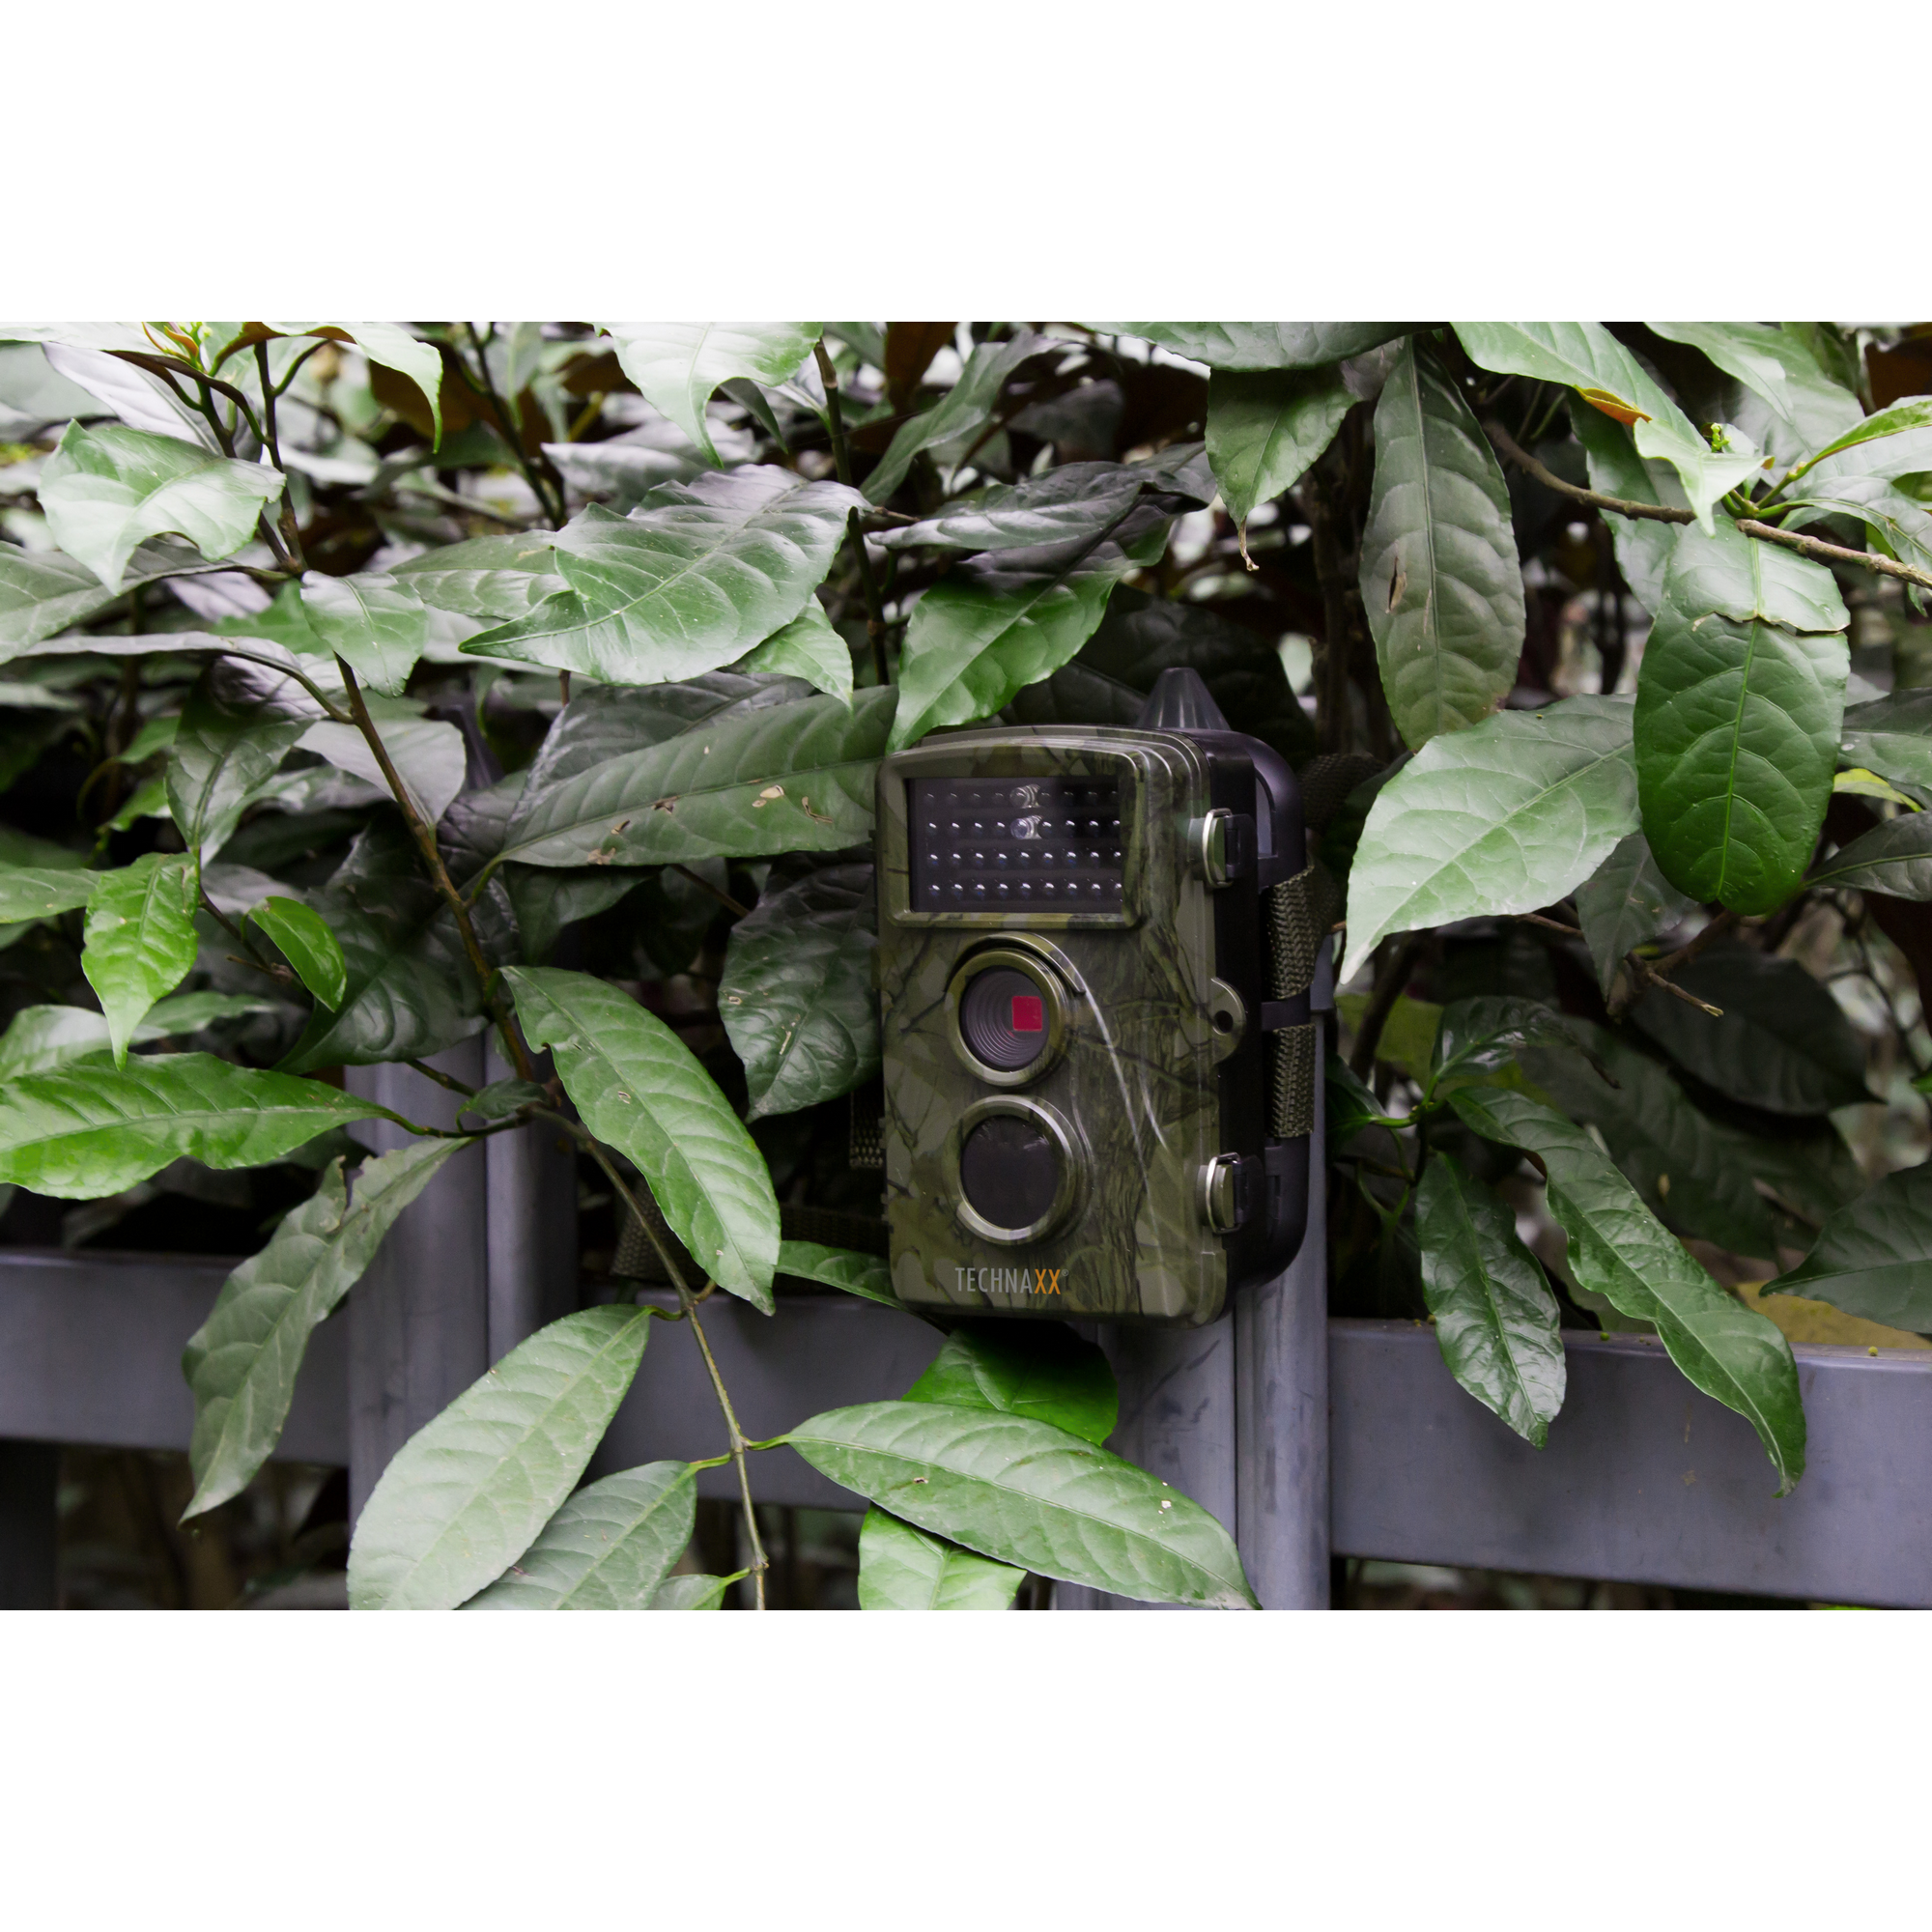 Wildtier- und Überwachungskamera 'TX-69' camouflage, Full-HD + product picture